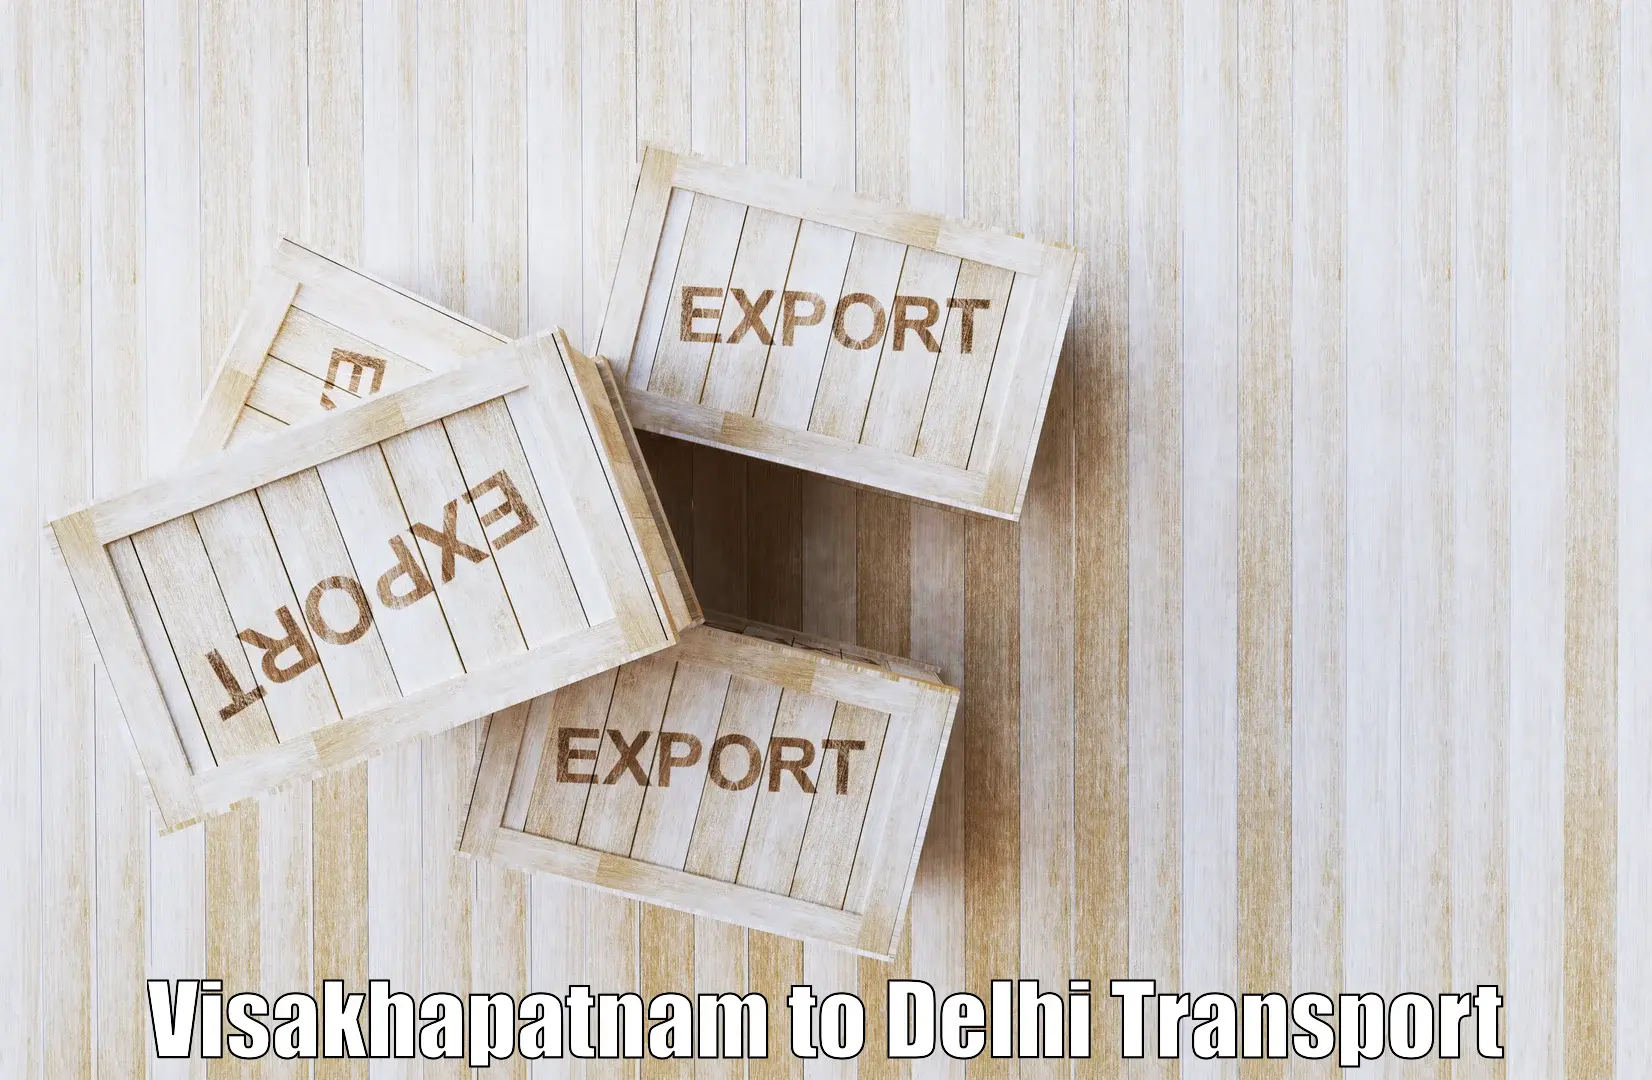 Daily transport service Visakhapatnam to University of Delhi